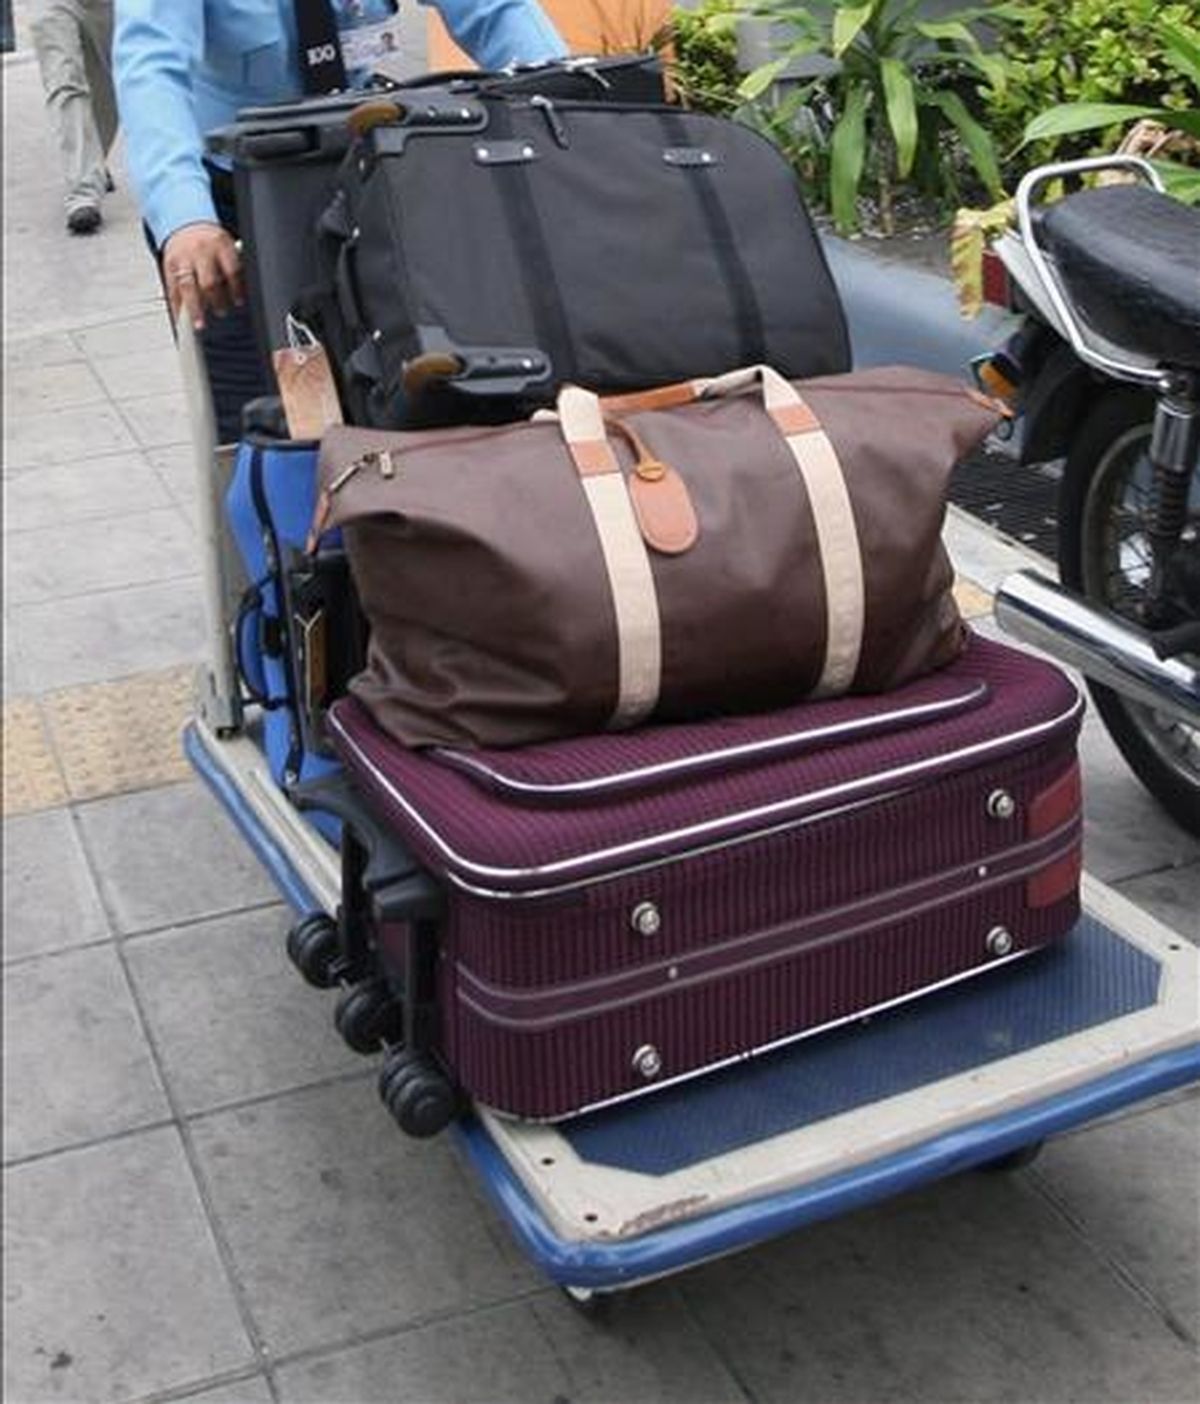 Un empleado de un hotel empuja un carrito lleno de maletas. EFE/Archivo